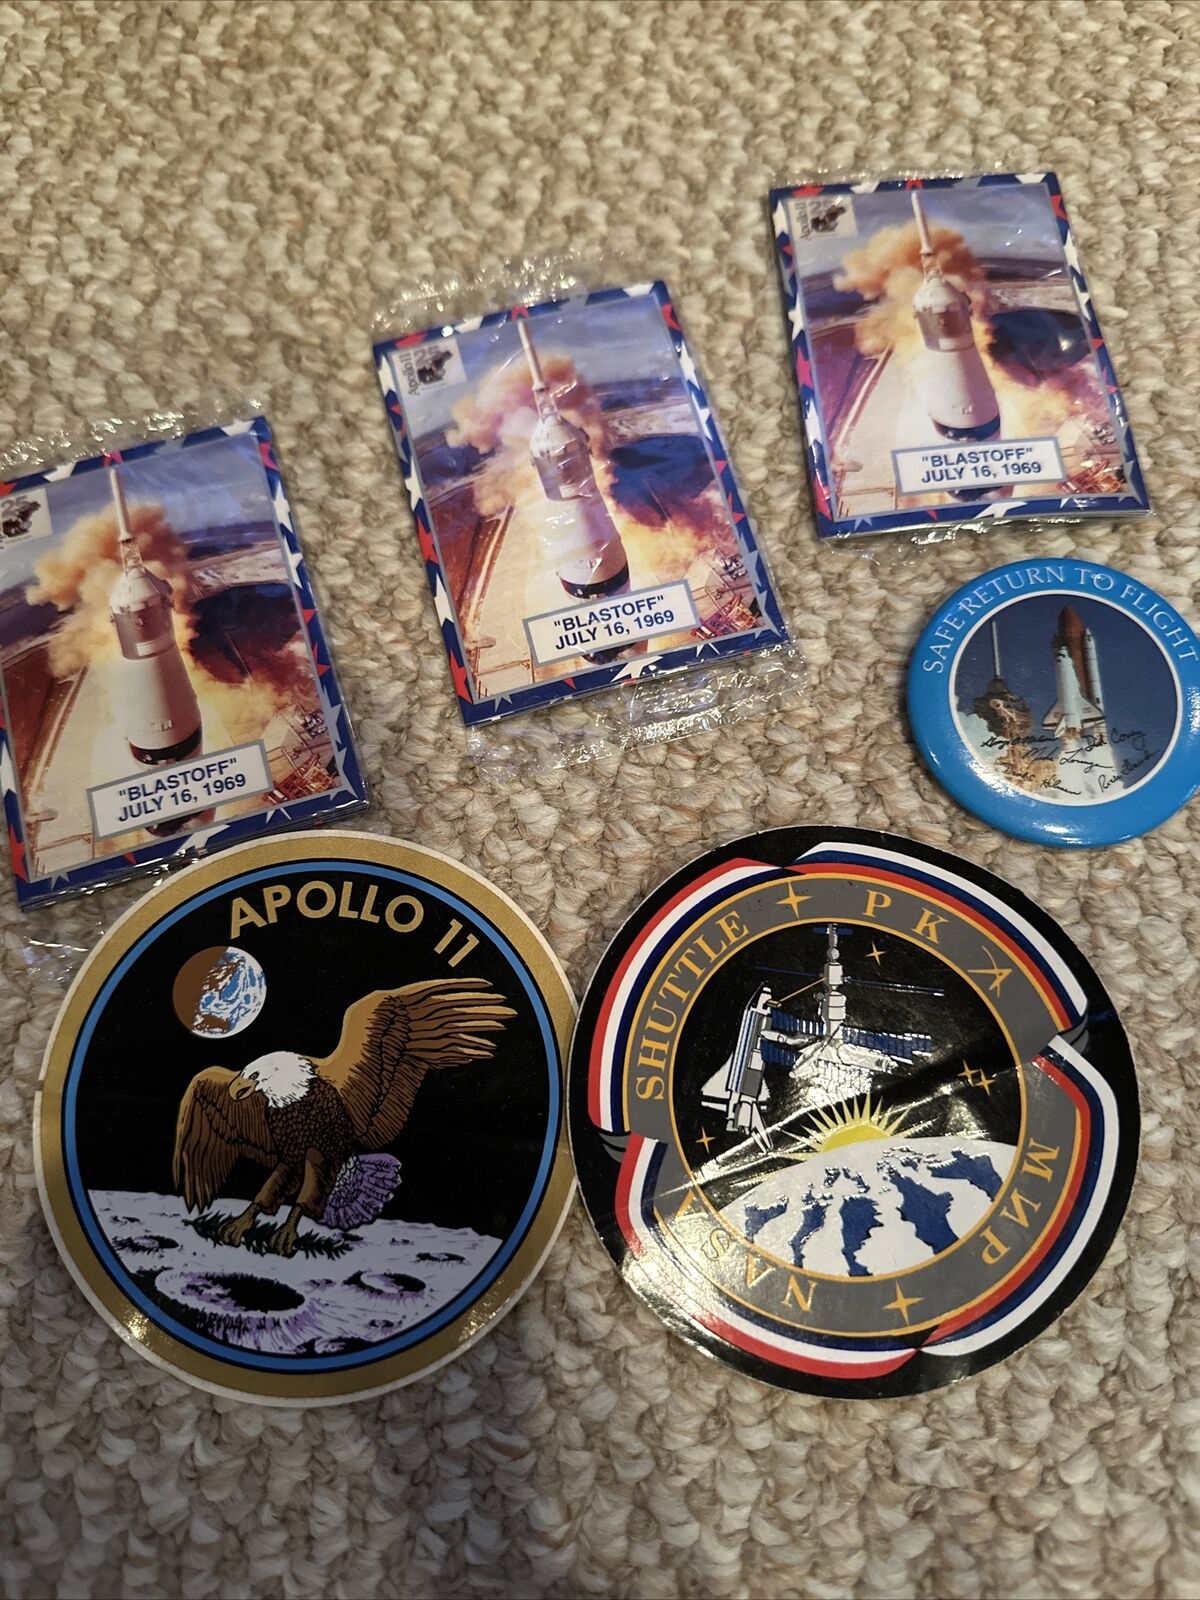 NASA Pack: 1994 Citgo APOLLO 11 25th Anniversary Blastoff Card, 2 Stickers, Pin